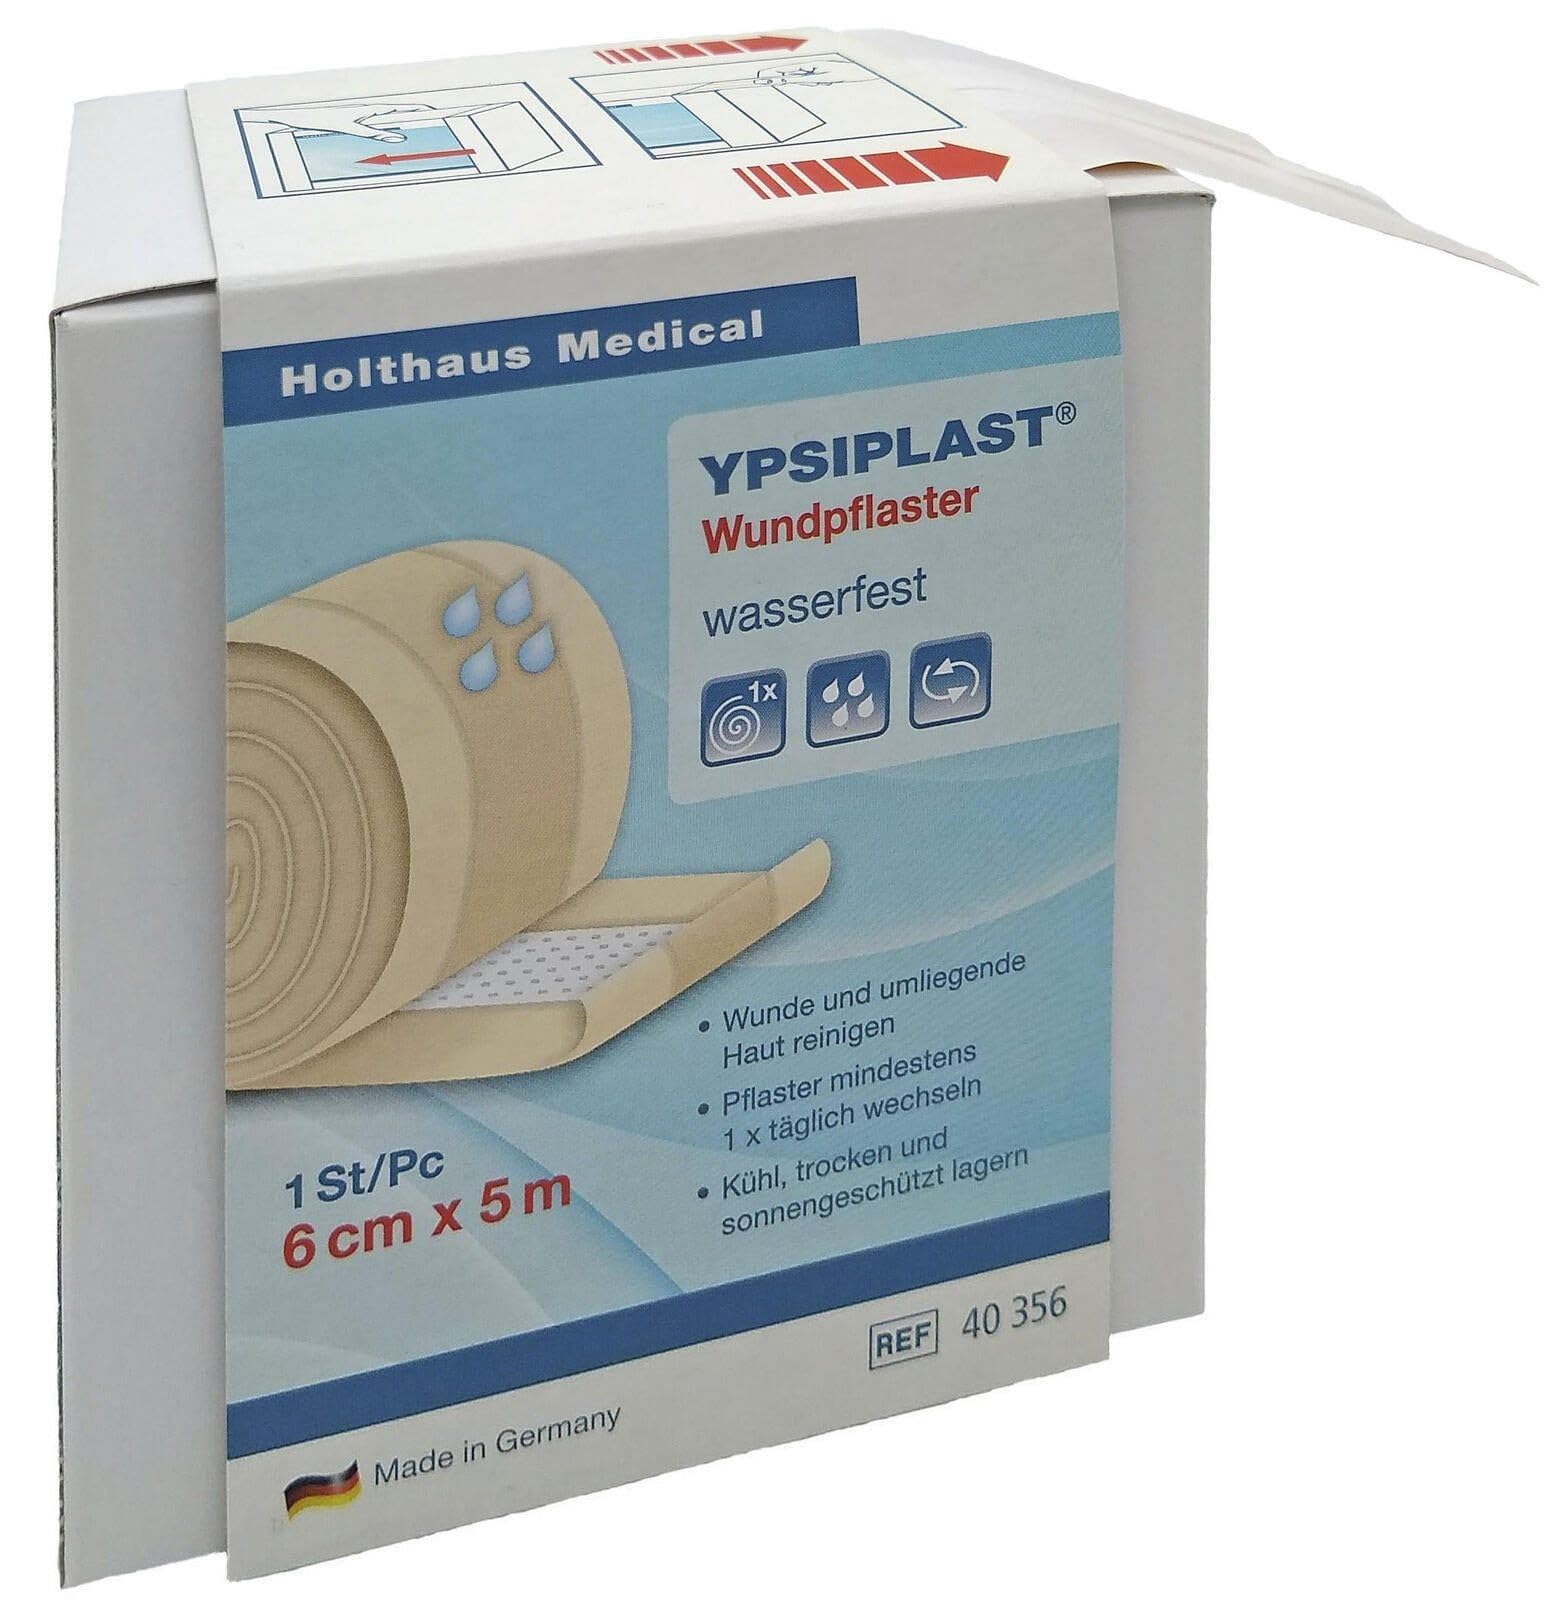 Holthaus Medical YPSIPLAST® Wundpflaster Spenderbox wasserfest 6 cm x 5 m von Holthaus Medical